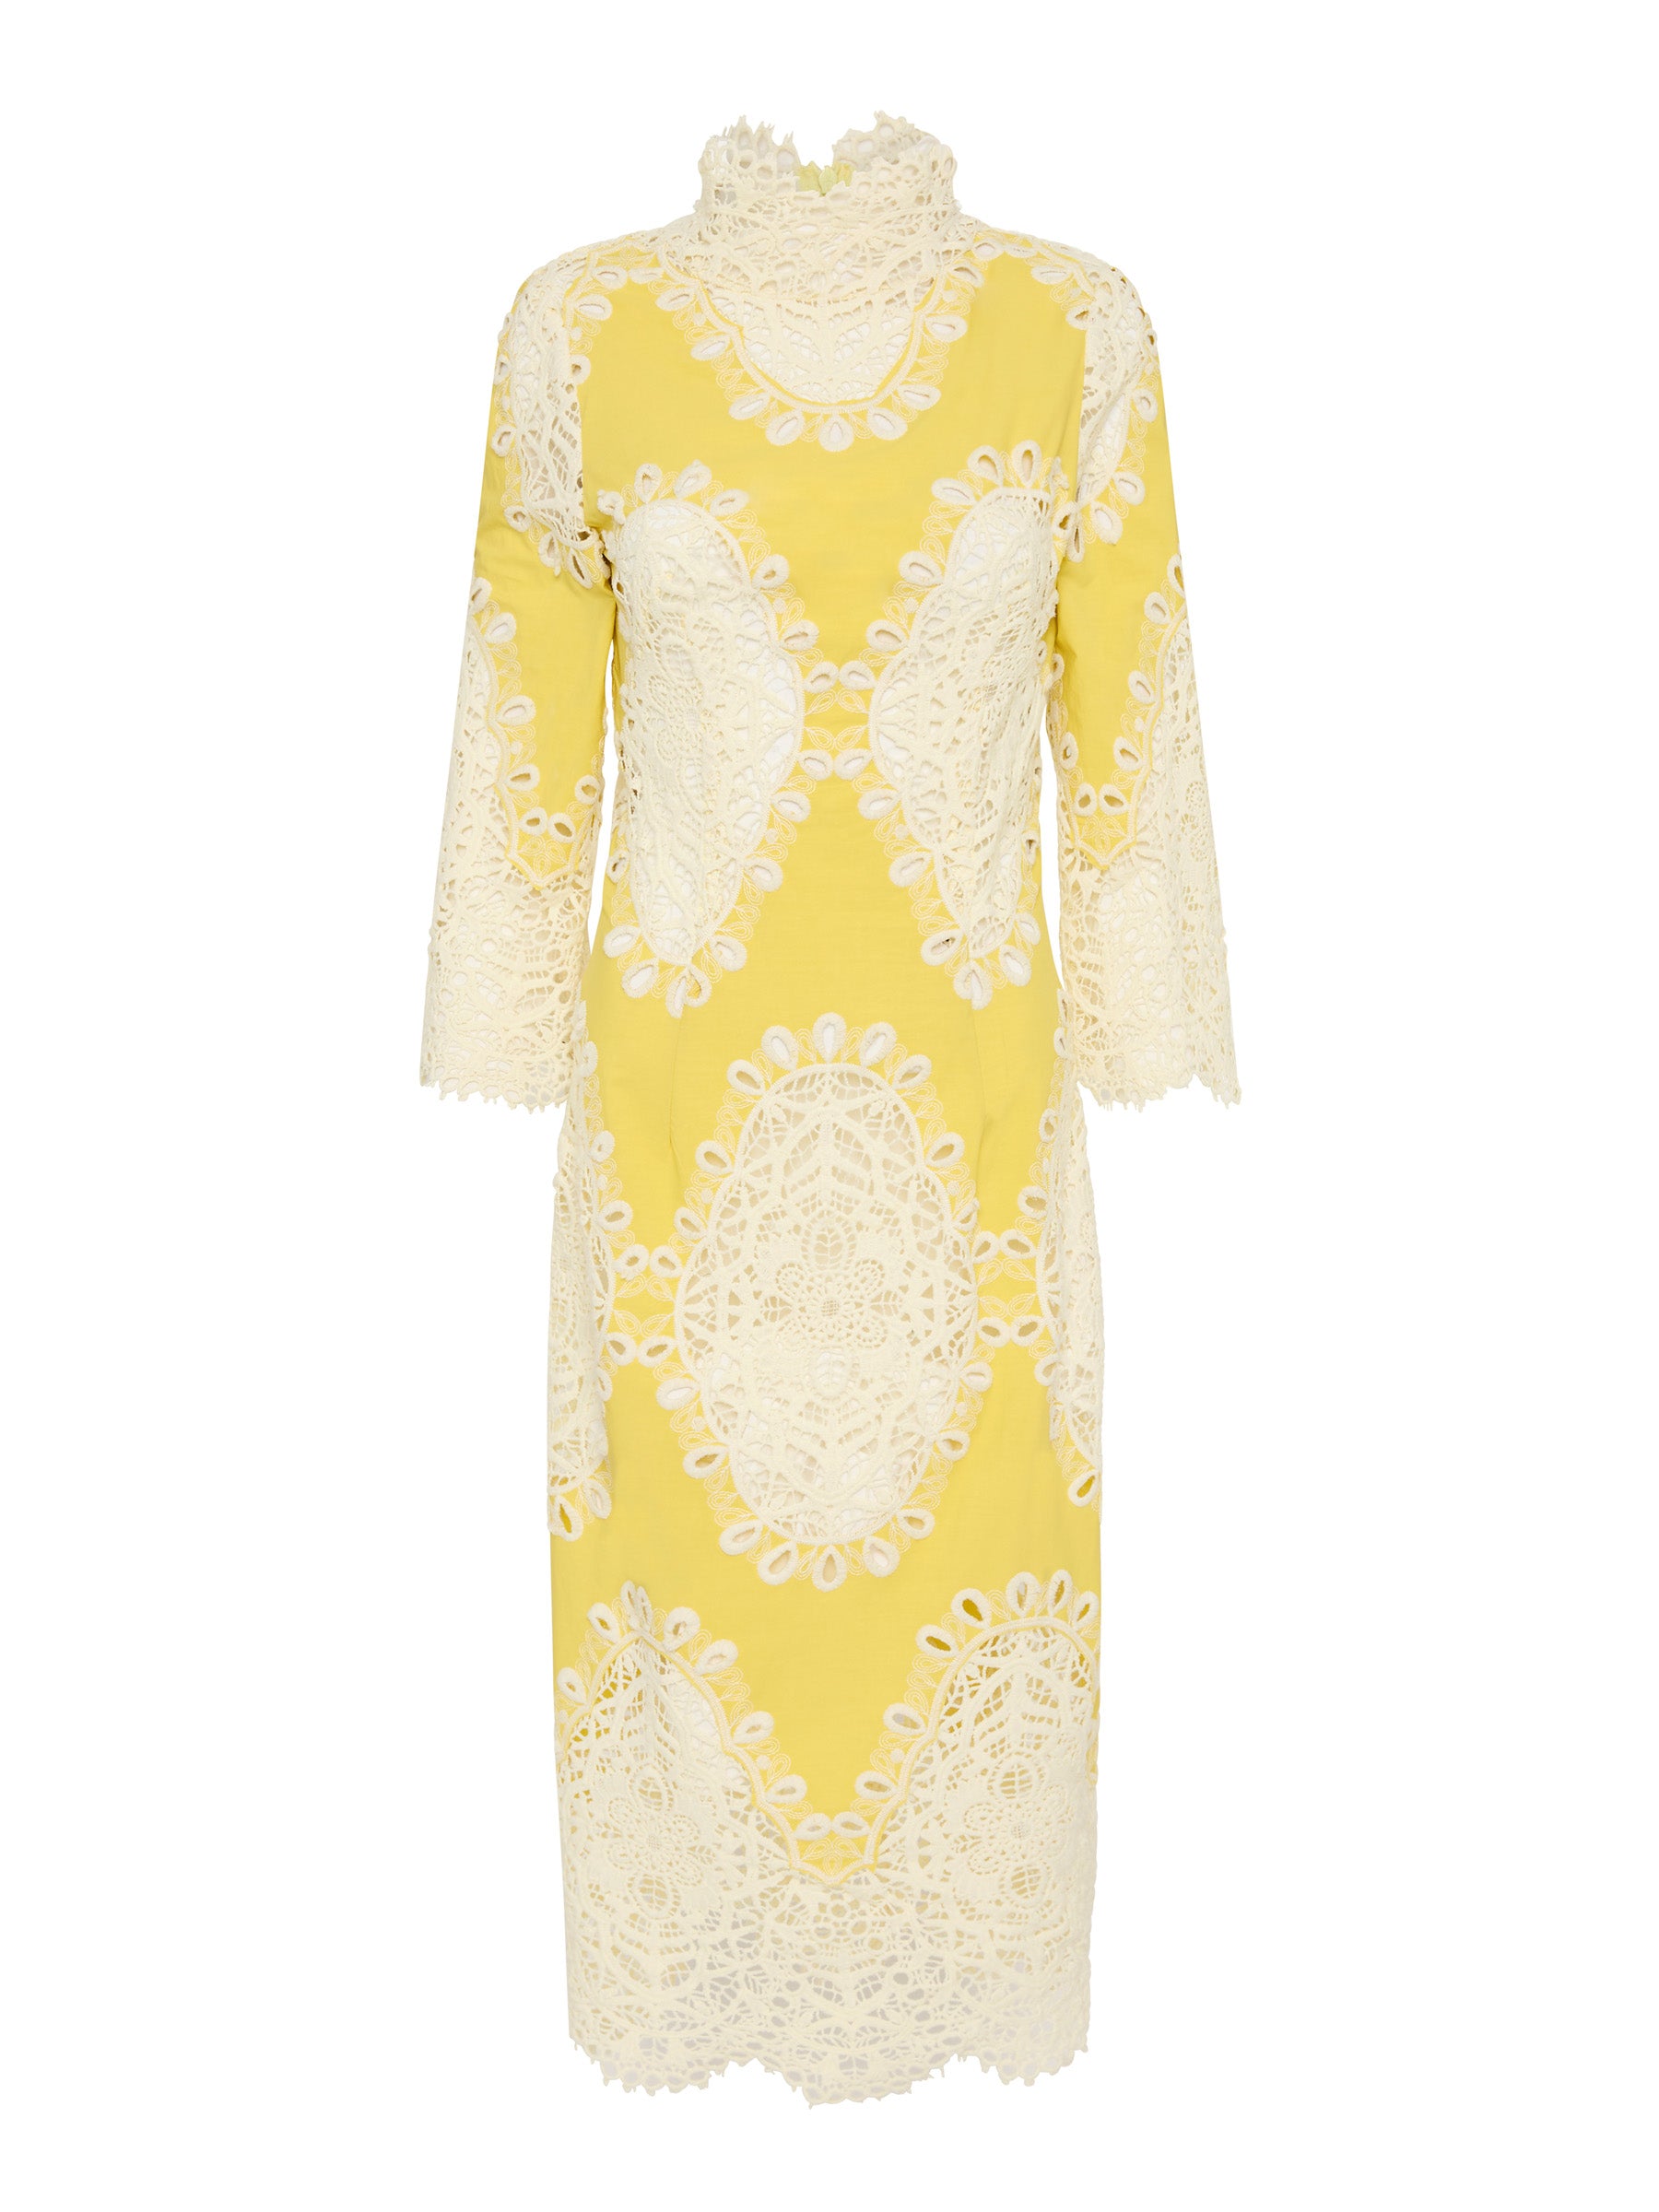 Mimosa Dress - Yellow/Ivory